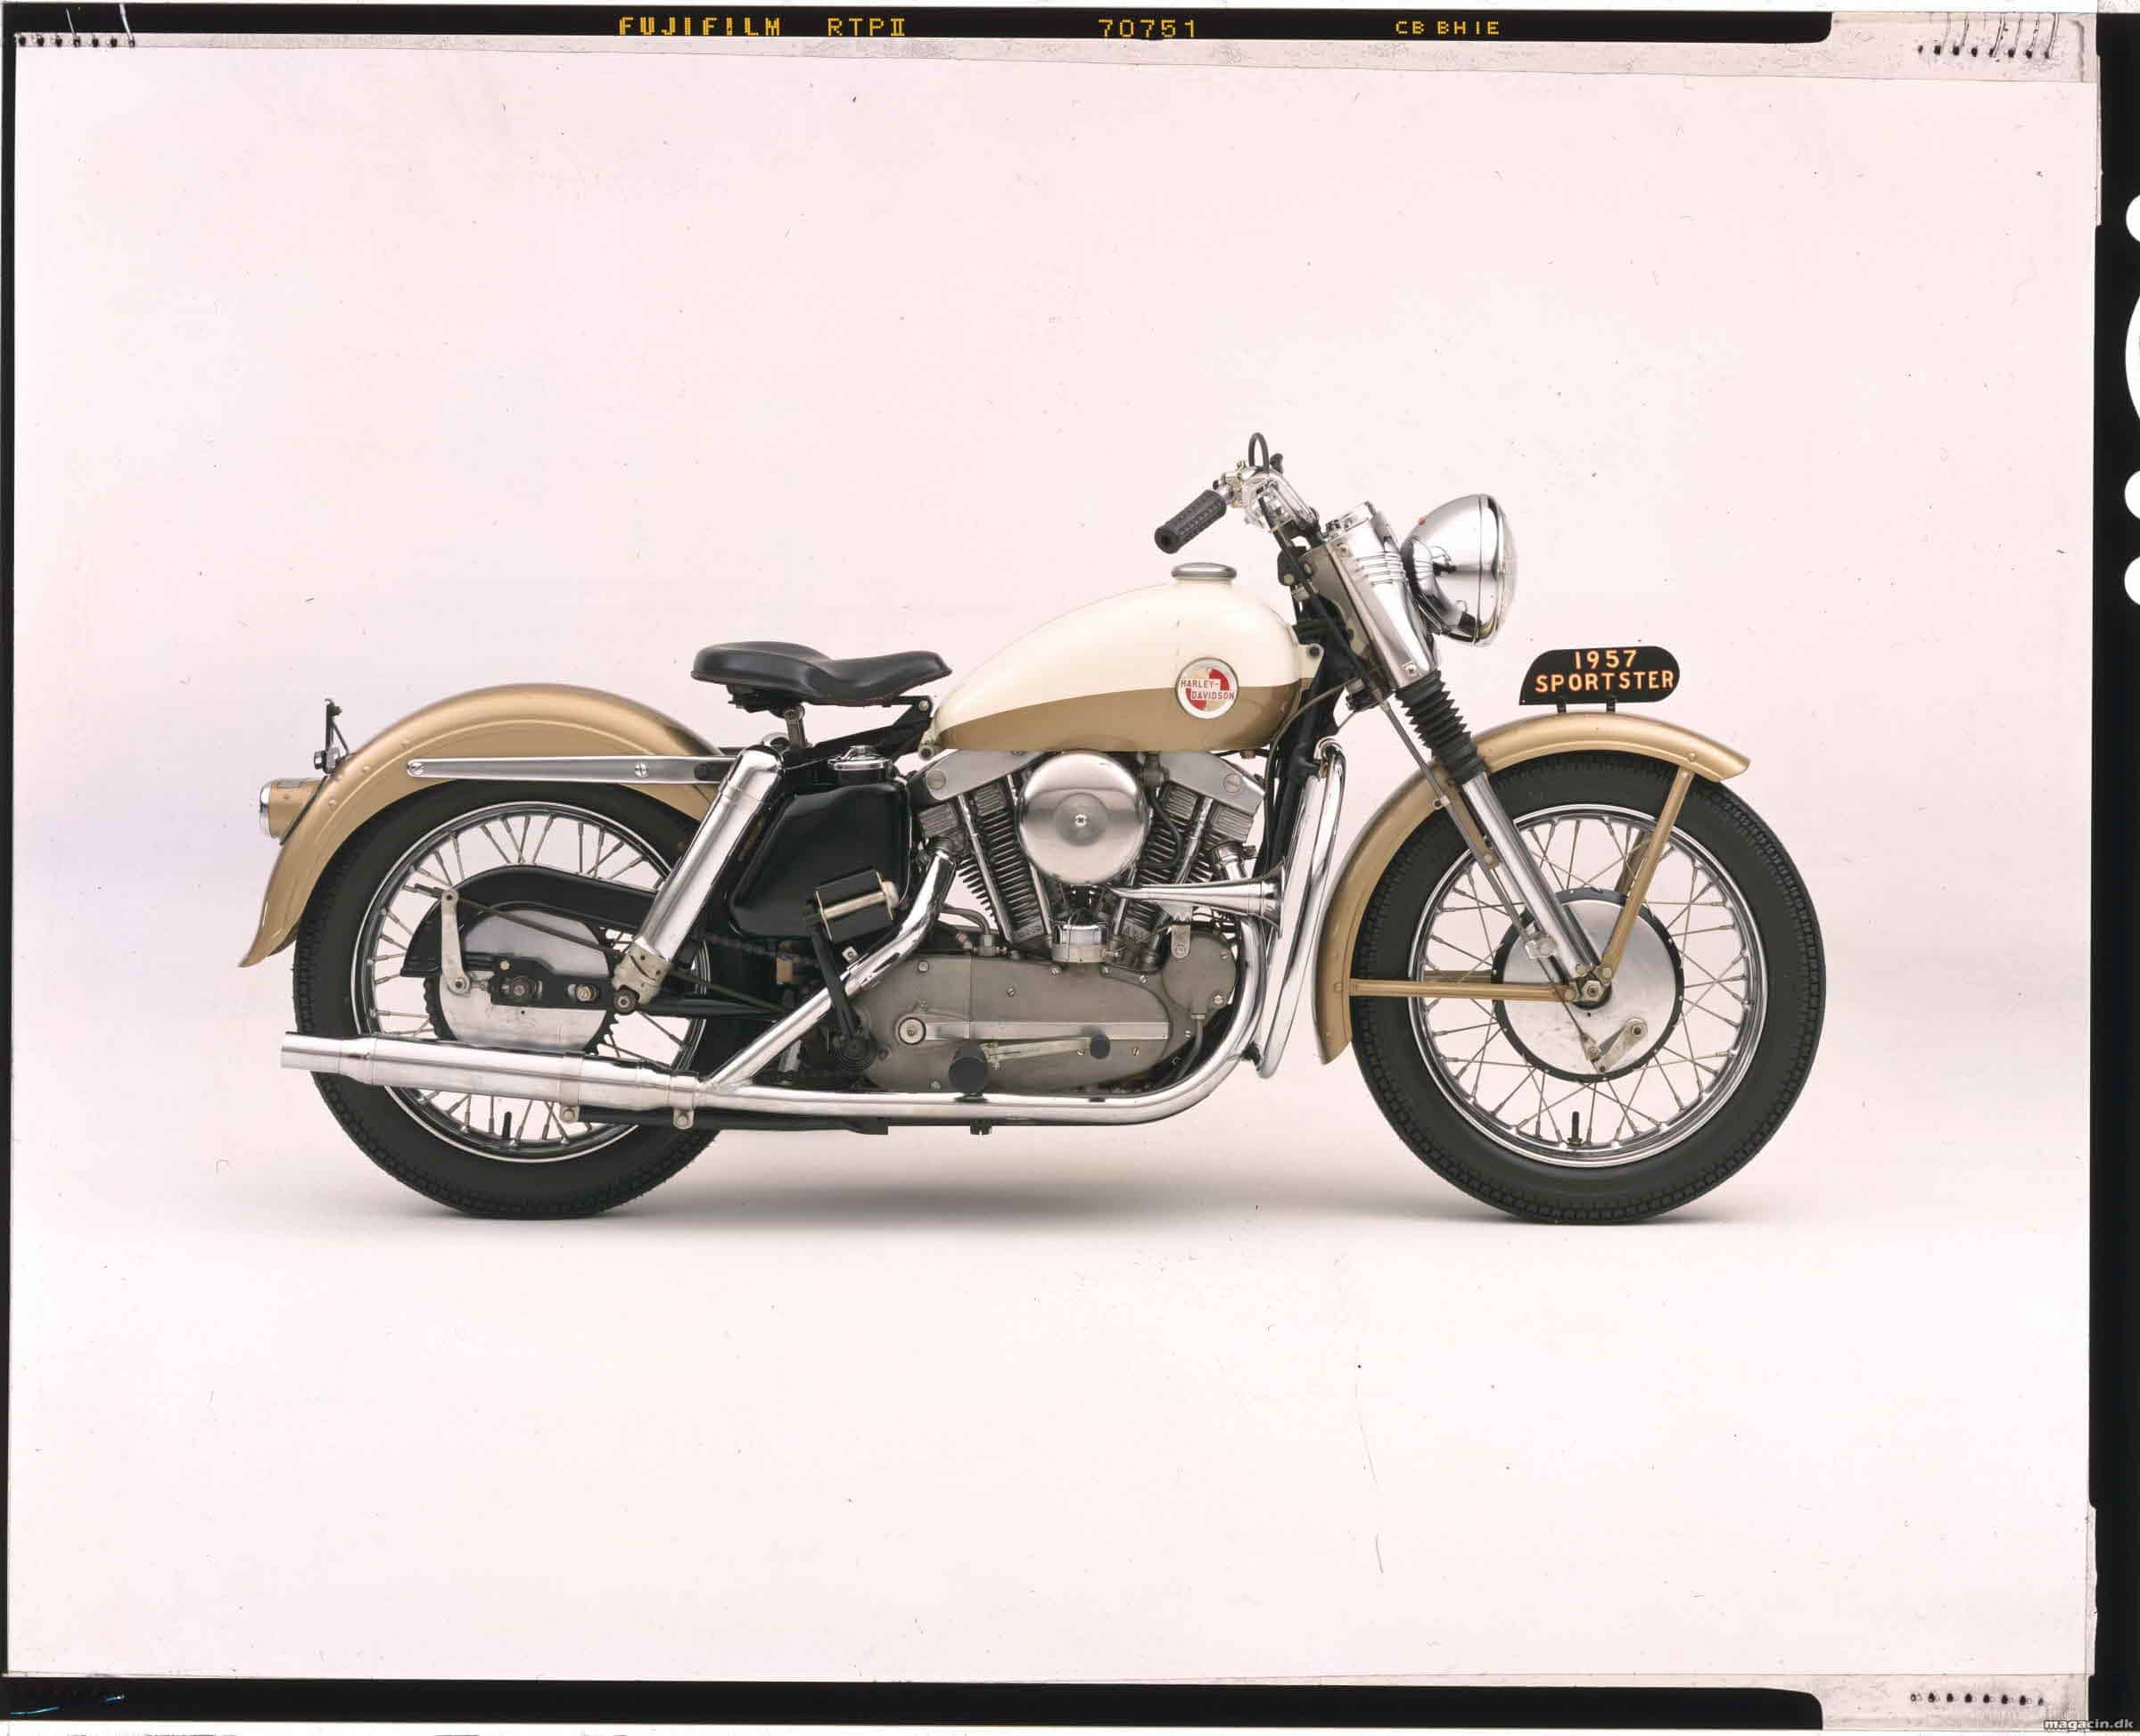 Harley-Davidson® fejrer 60 år med Sportster